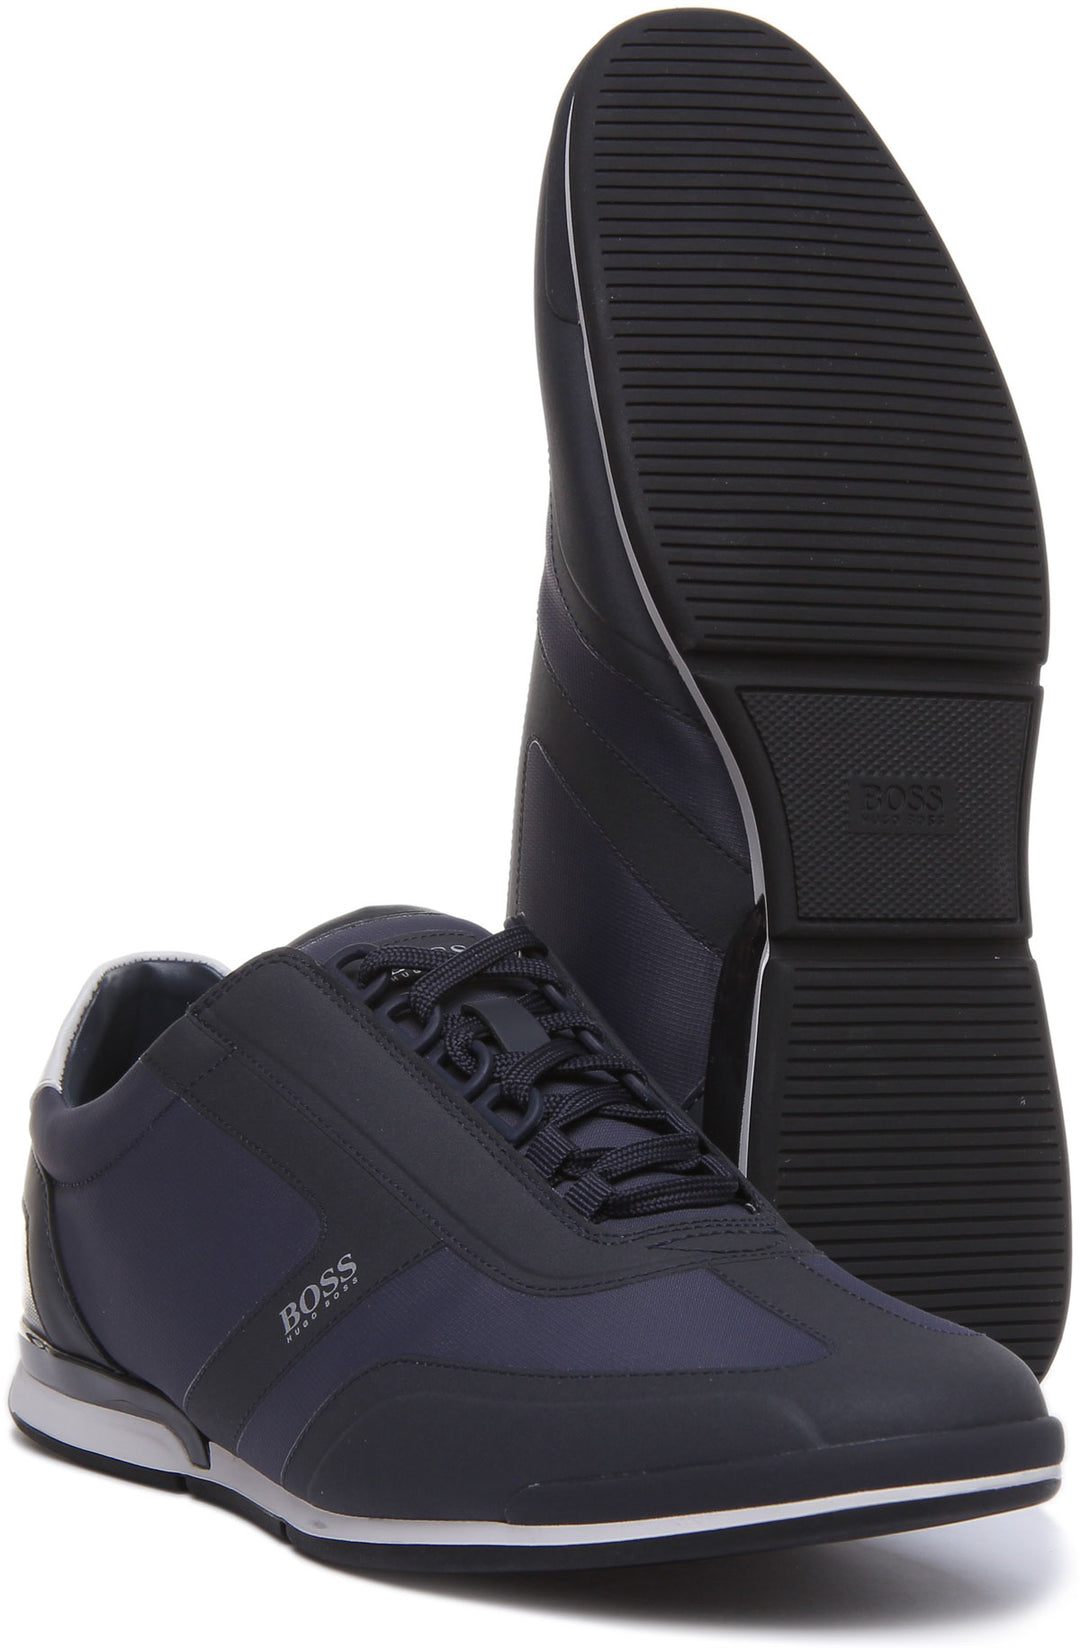 Hugo Boss Saturn Chaussures synthétiques à lacets bas de gamme pour ho –  4feetshoes